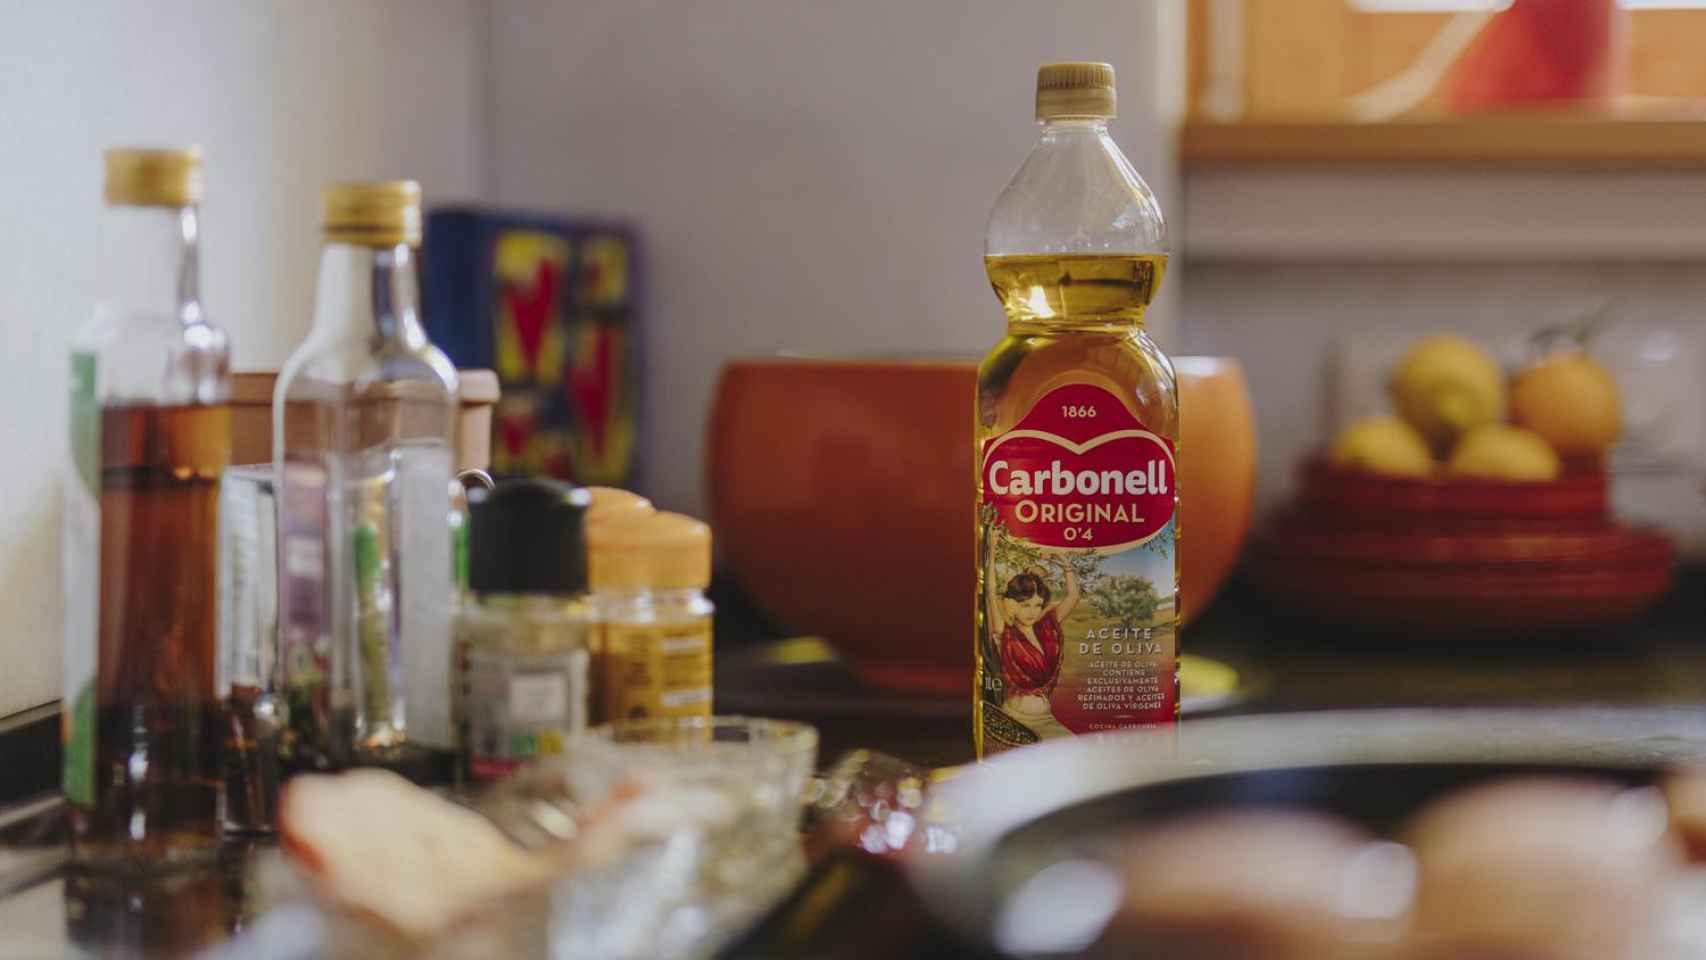 Aceite de oliva de Carbonell disponible en Carrefour.